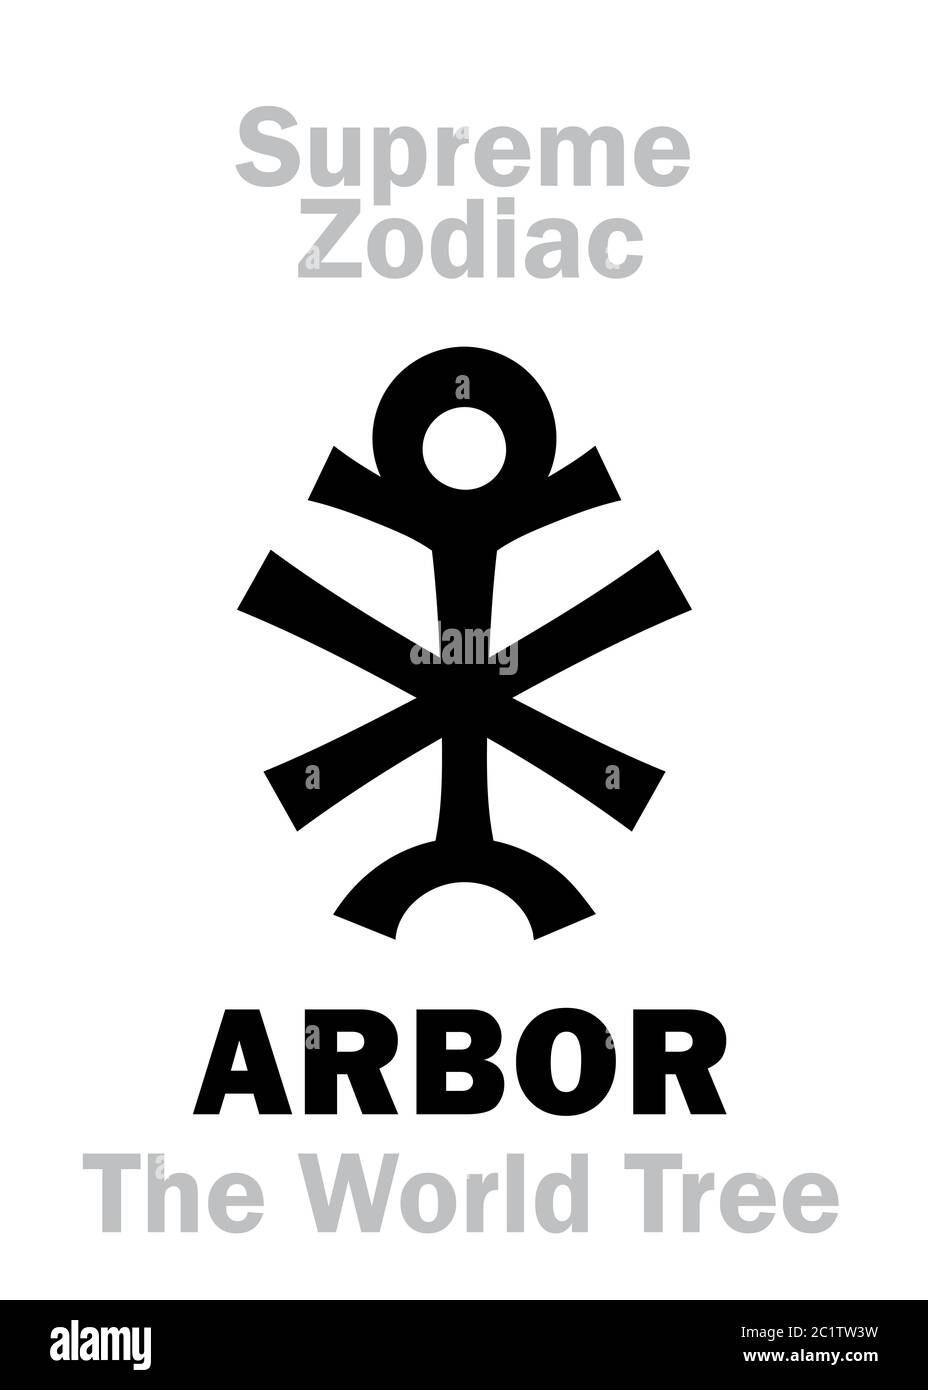 Astrologie: Zodiaque Suprême: ARBOR (l'arbre du monde)  Cassiopée («trône des cieux») Banque D'Images